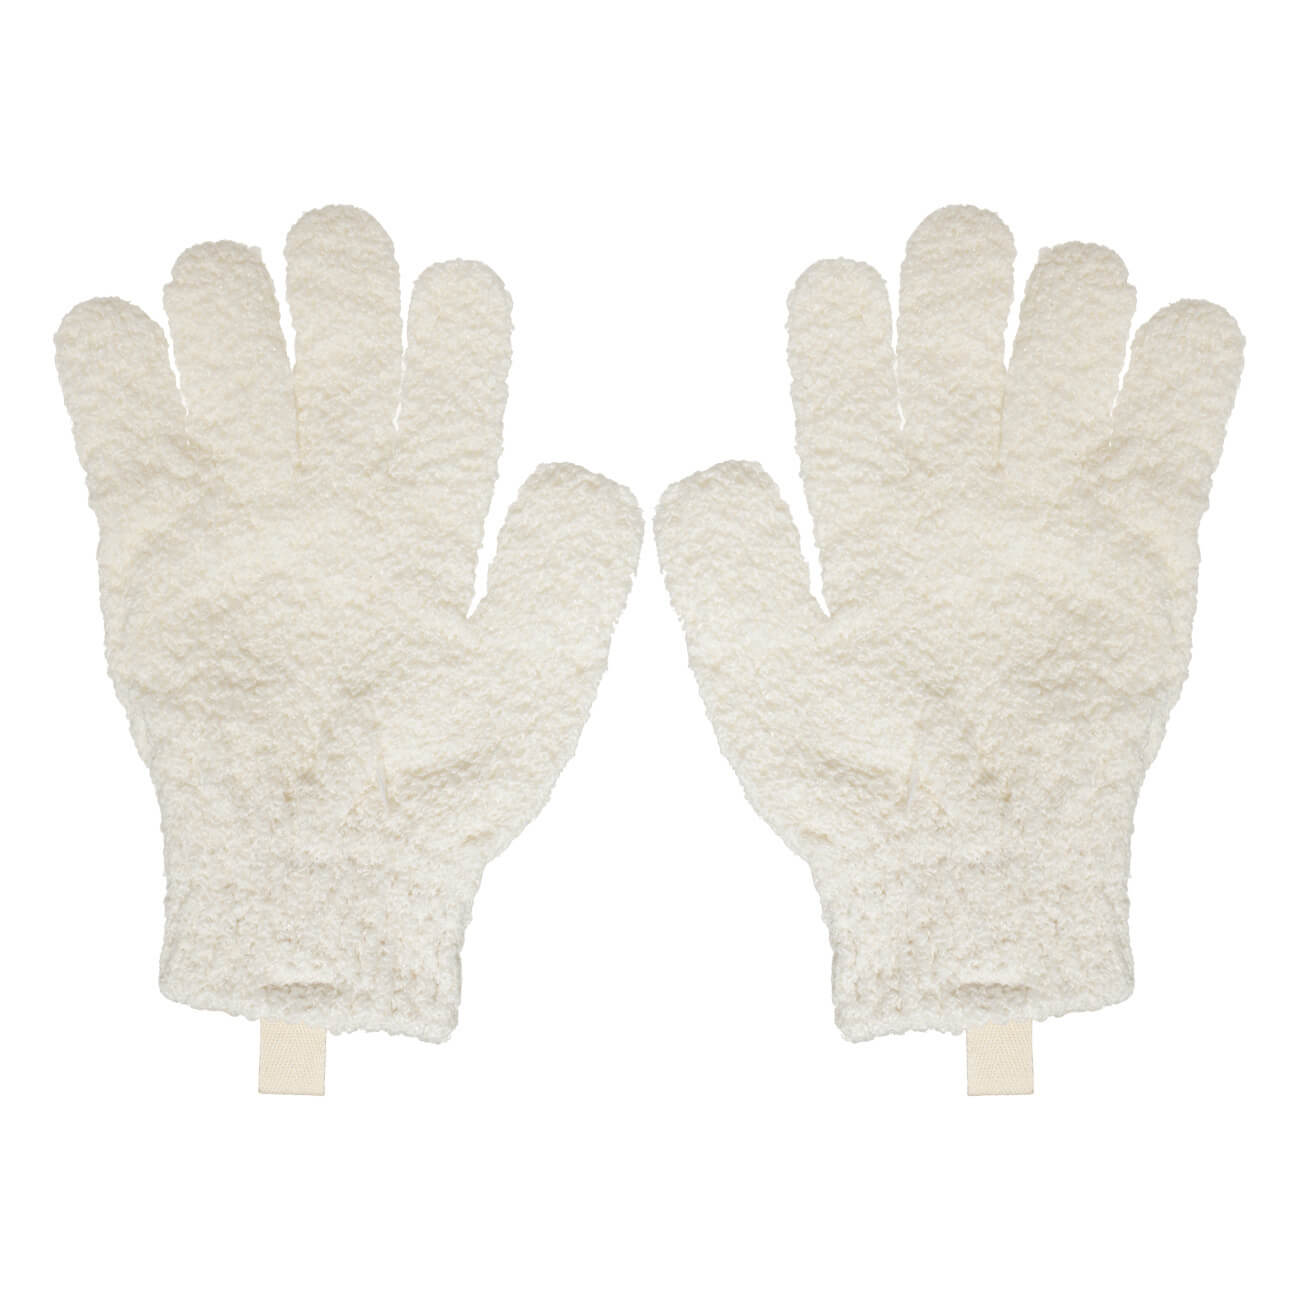 Перчатка для мытья тела, 21 см, 2 шт, отшелушивающая, полиэстер, молочная, Unique spa мочалка перчатка полосатик